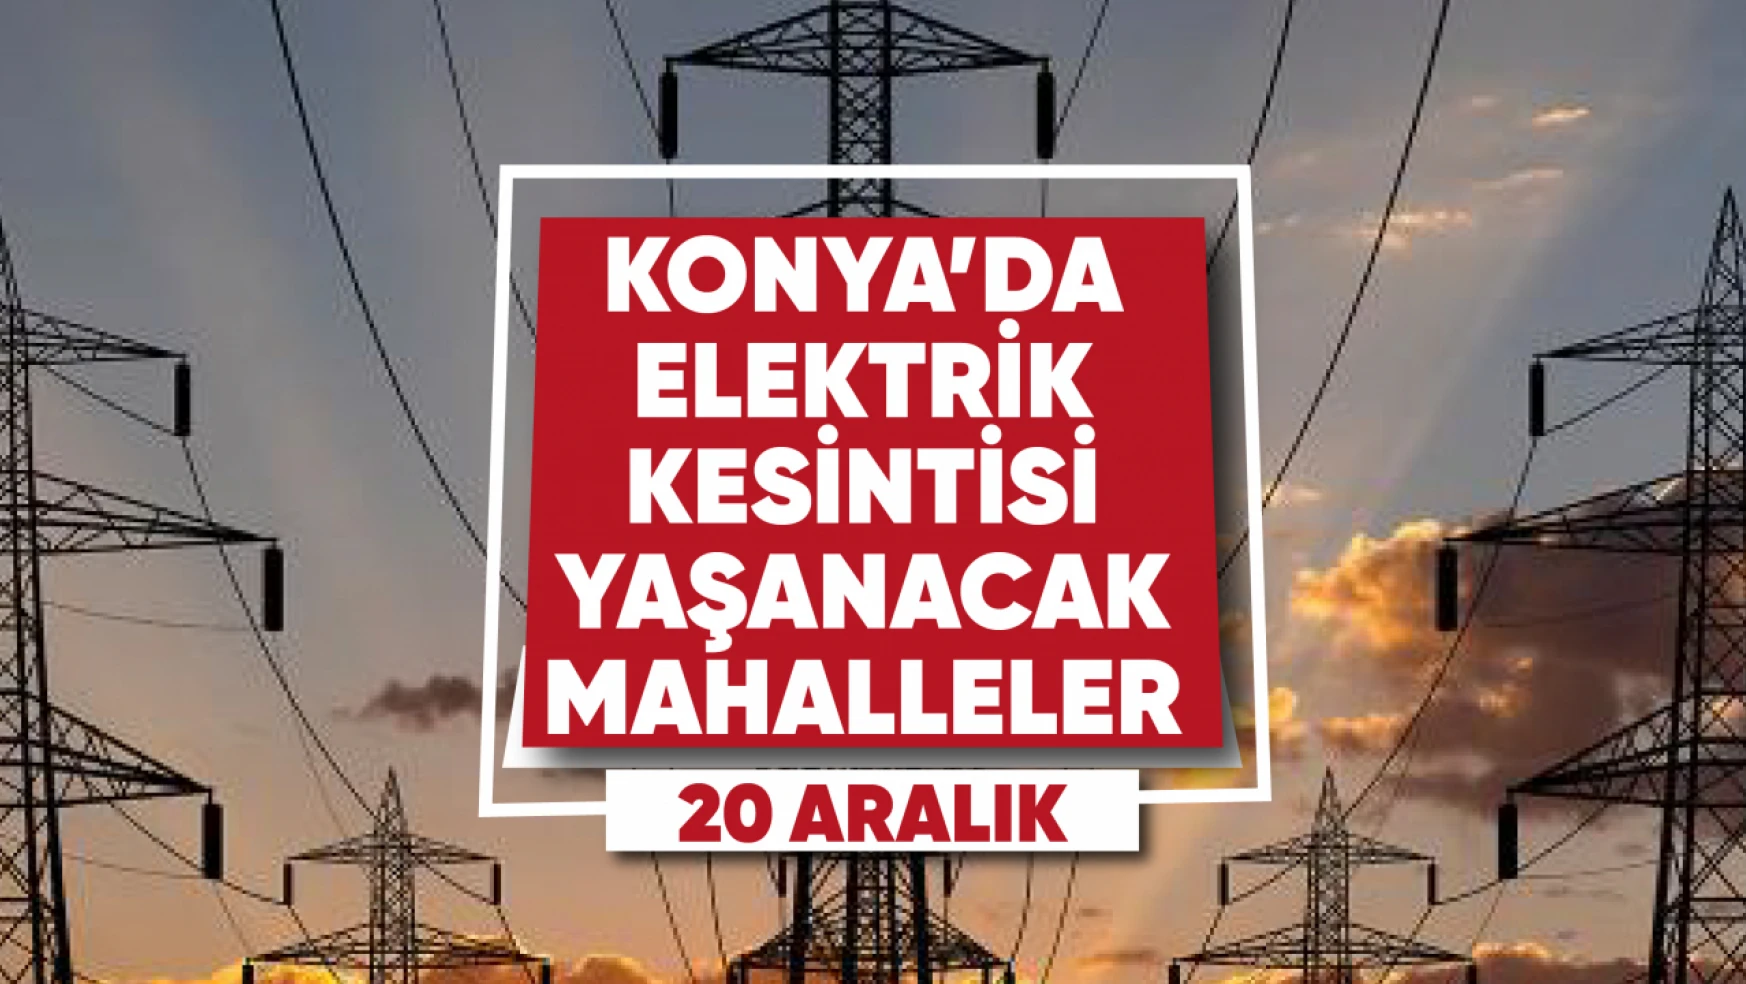 Konya'da elektrik kesintisi yaşanacak mahalle ve sokaklar (20 Aralık)